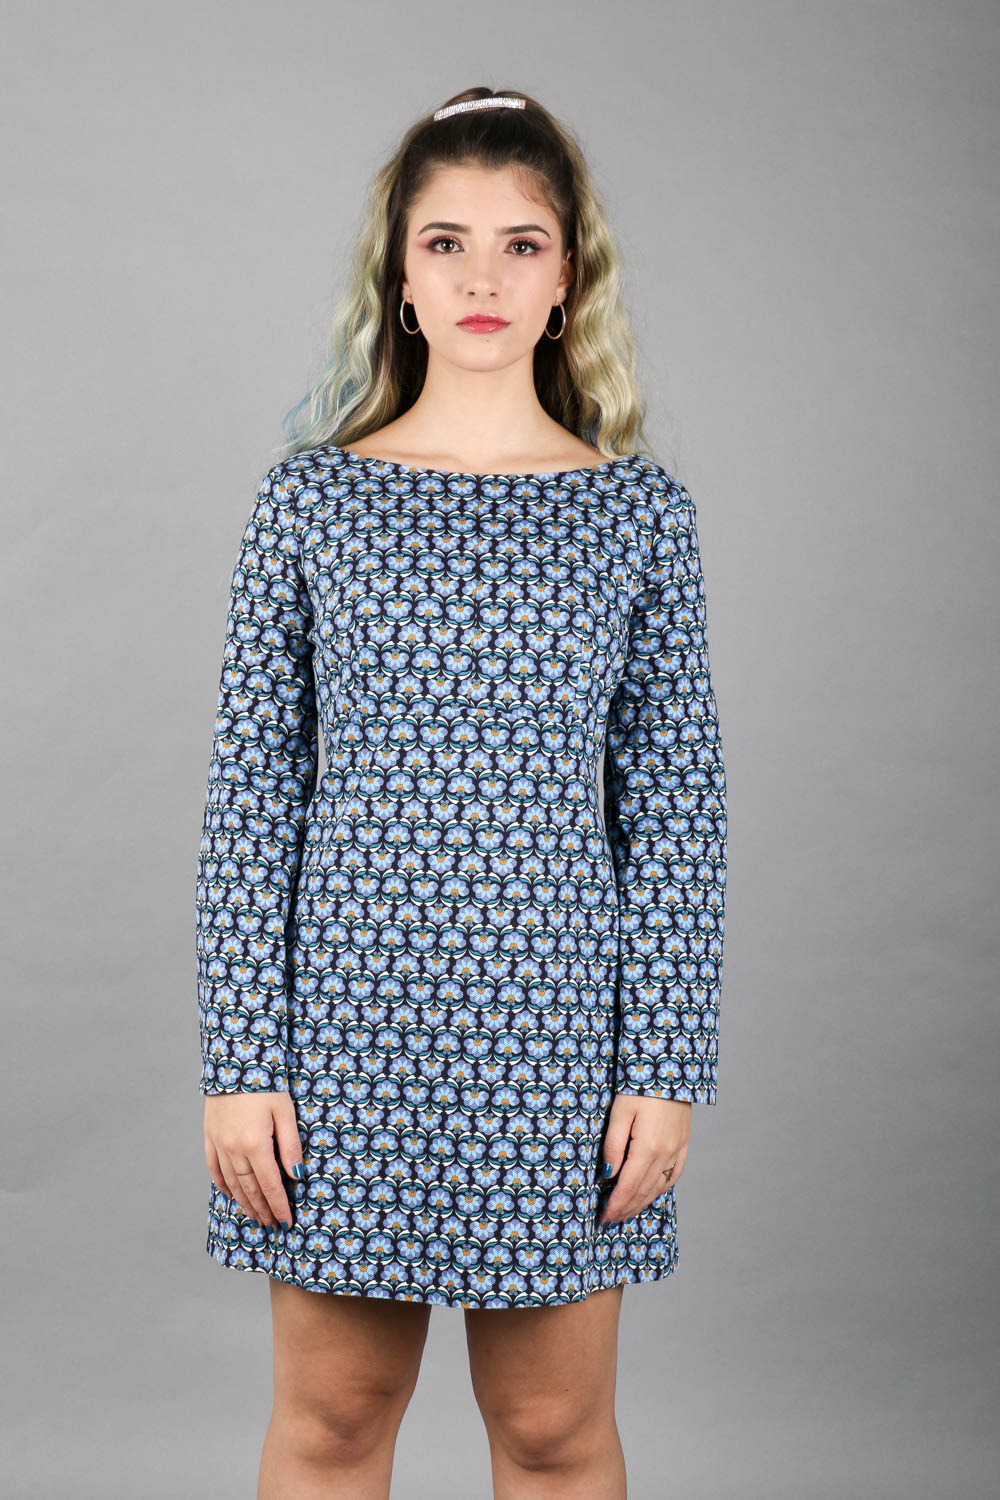 Preços baixos em Camisa de manga longa feminina Zara Vestidos